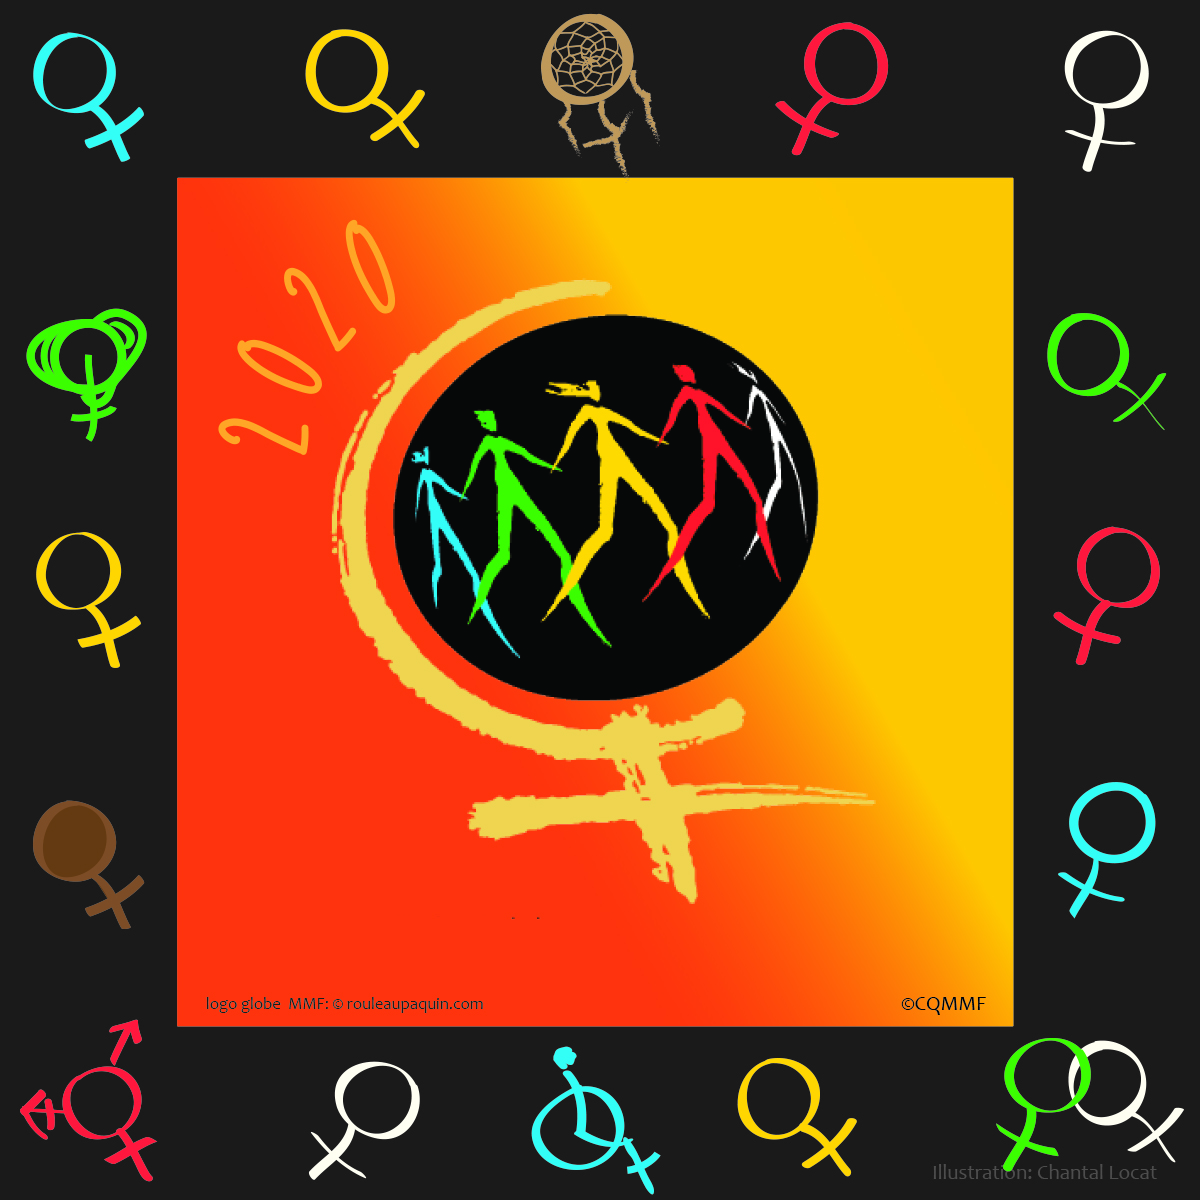 Logo de la Marche mondiale des femmes